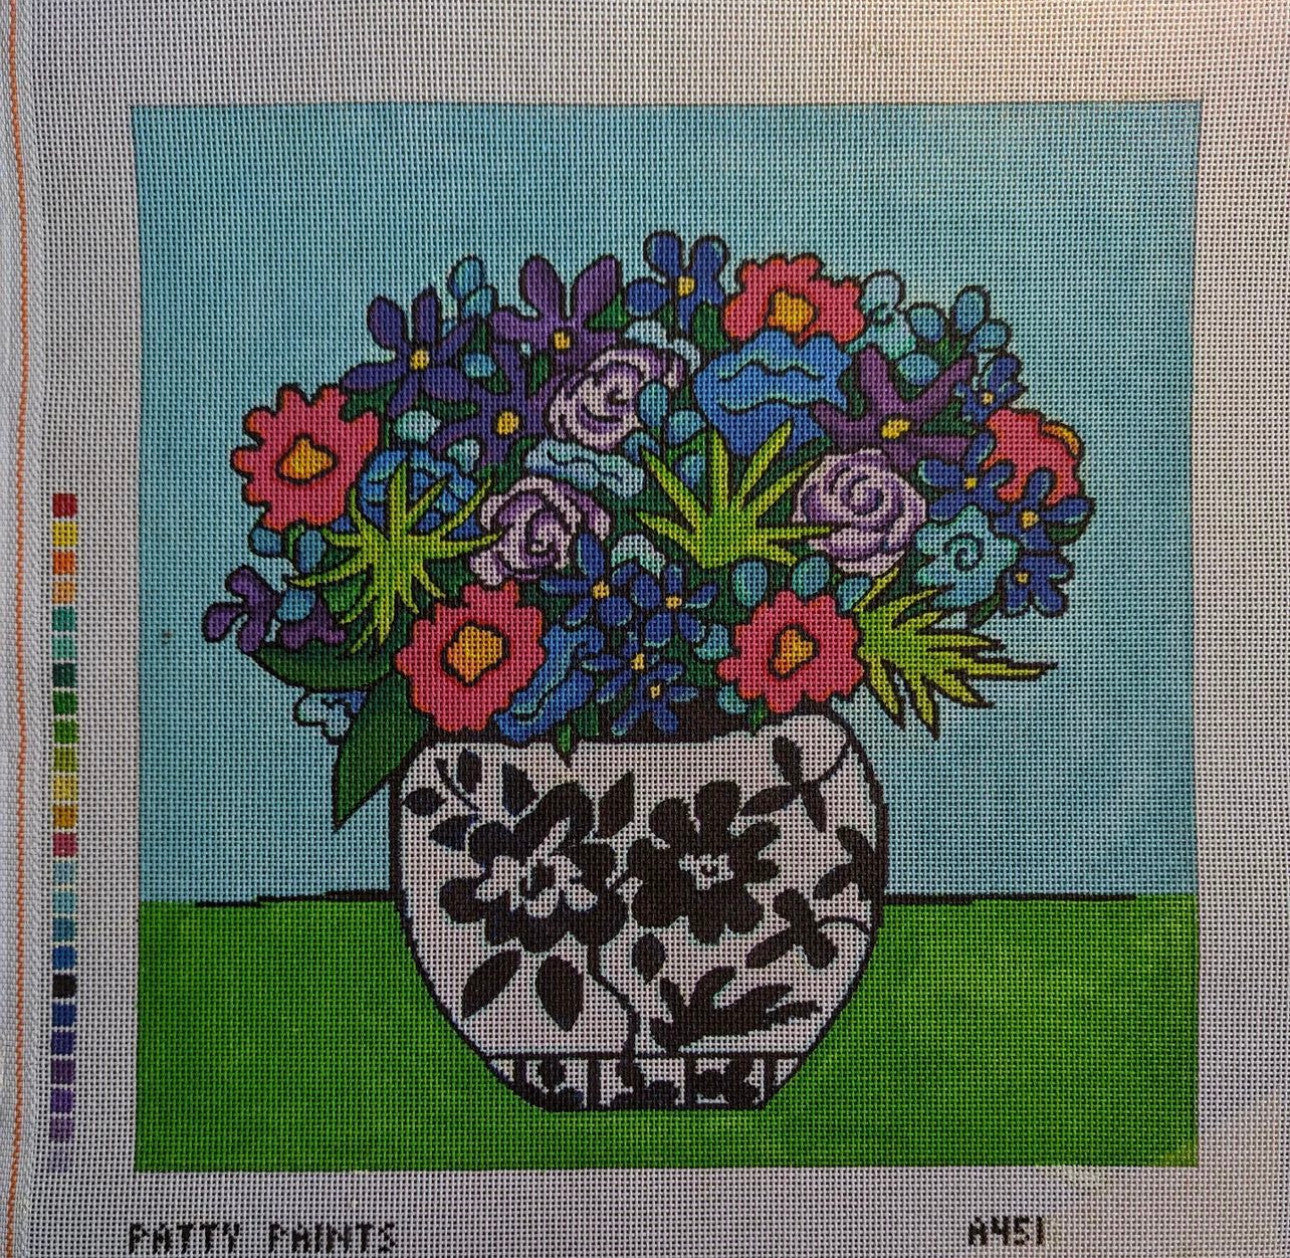 Patty Paints A451 Floral